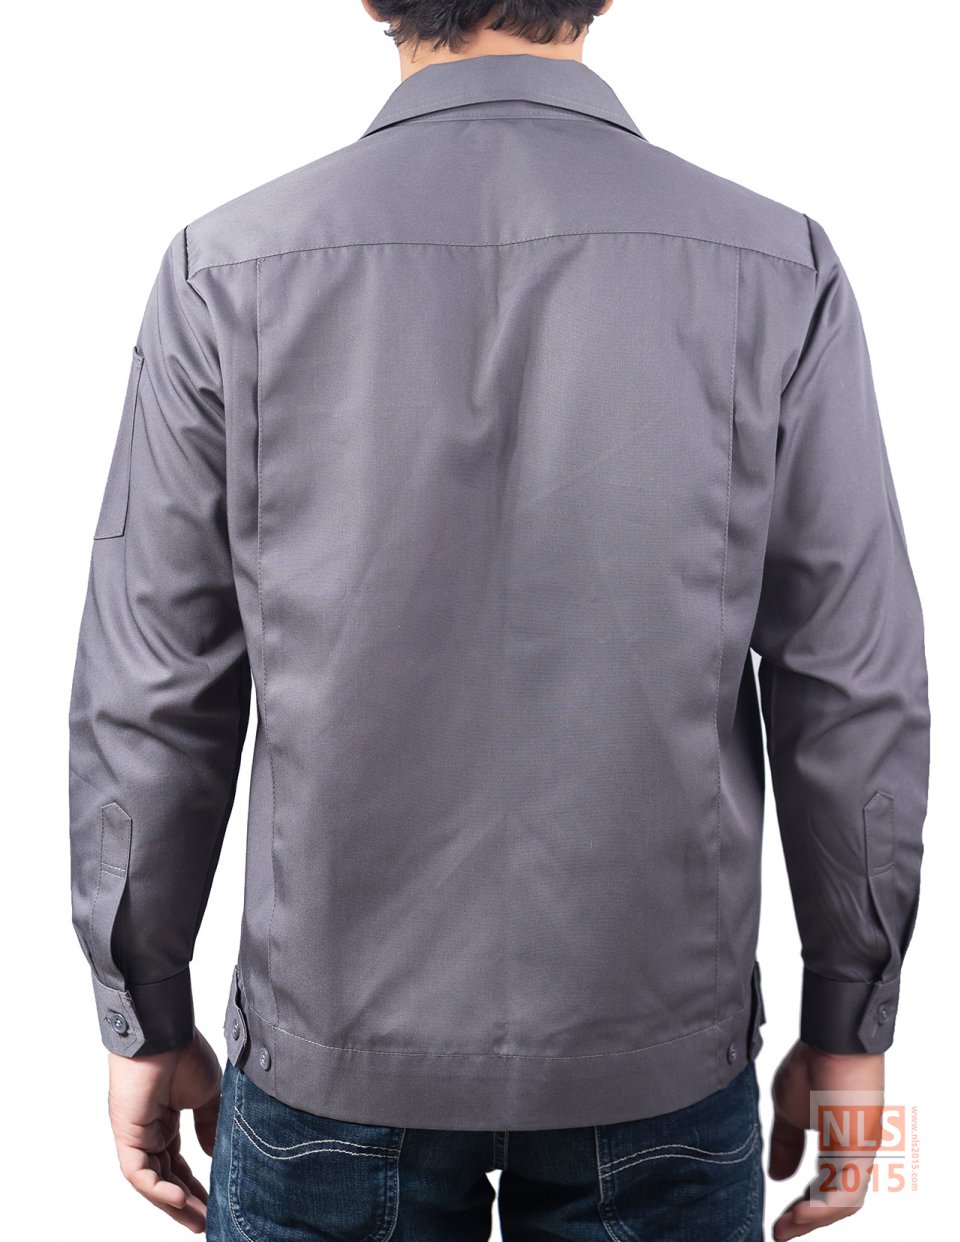 นลินสิริ 2015 จำกัด โรงงานผลิตเสื้อยูนิฟอร์มพนักงาน ชุดทำงานพนักงาน เสื้อช็อป เสื้อช่าง เสื้อเชิ้ต เสื้อโปโลรูปที่ 